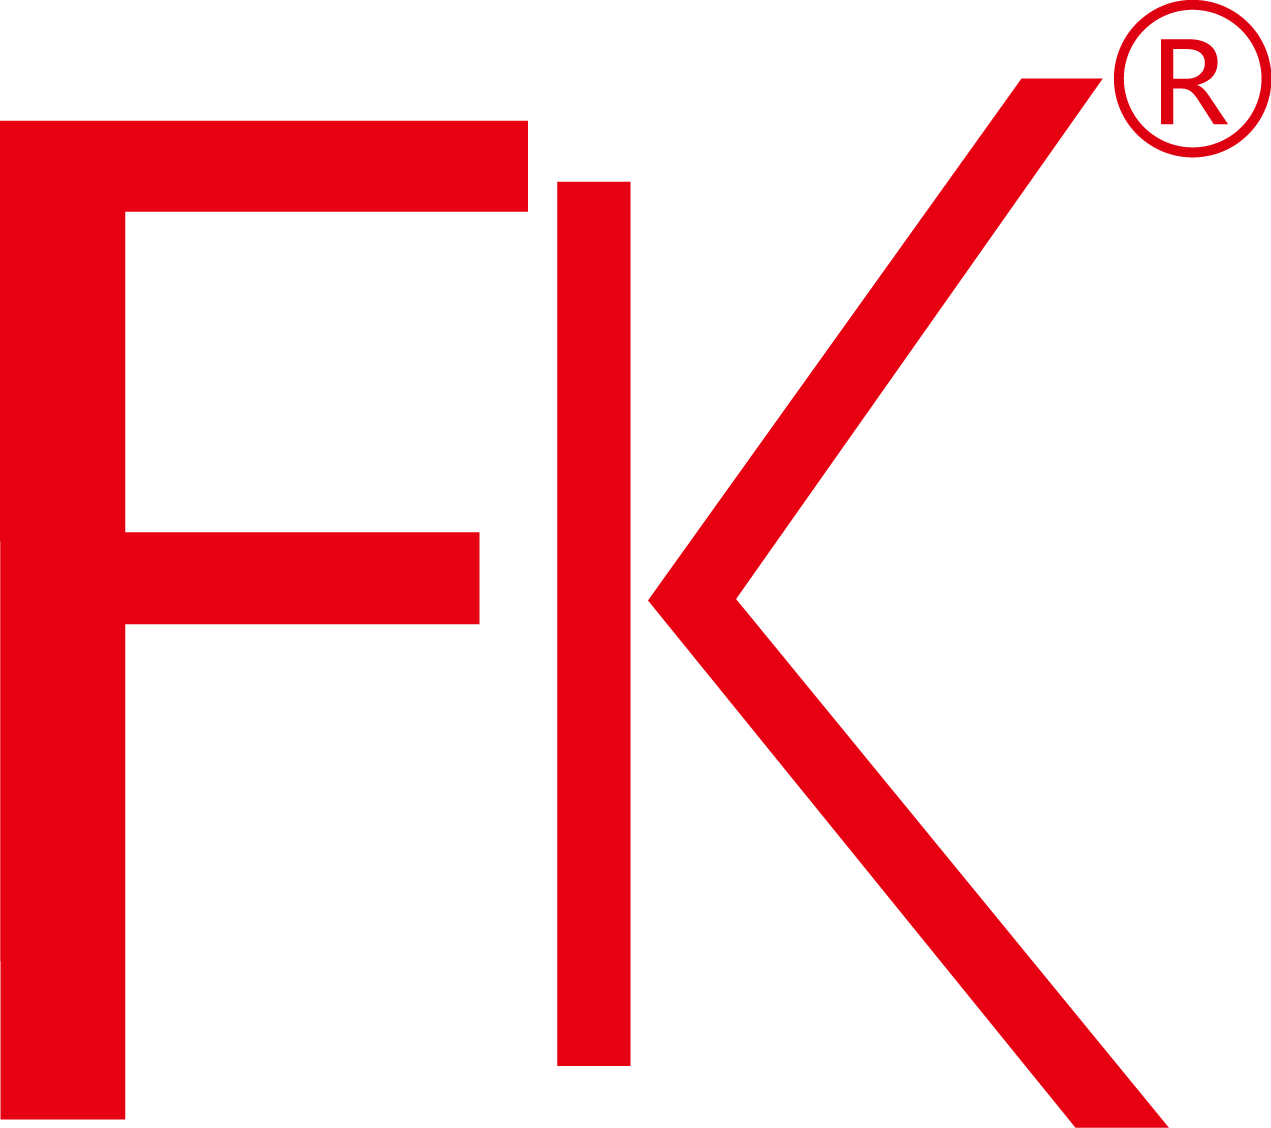 FK Bearing Group